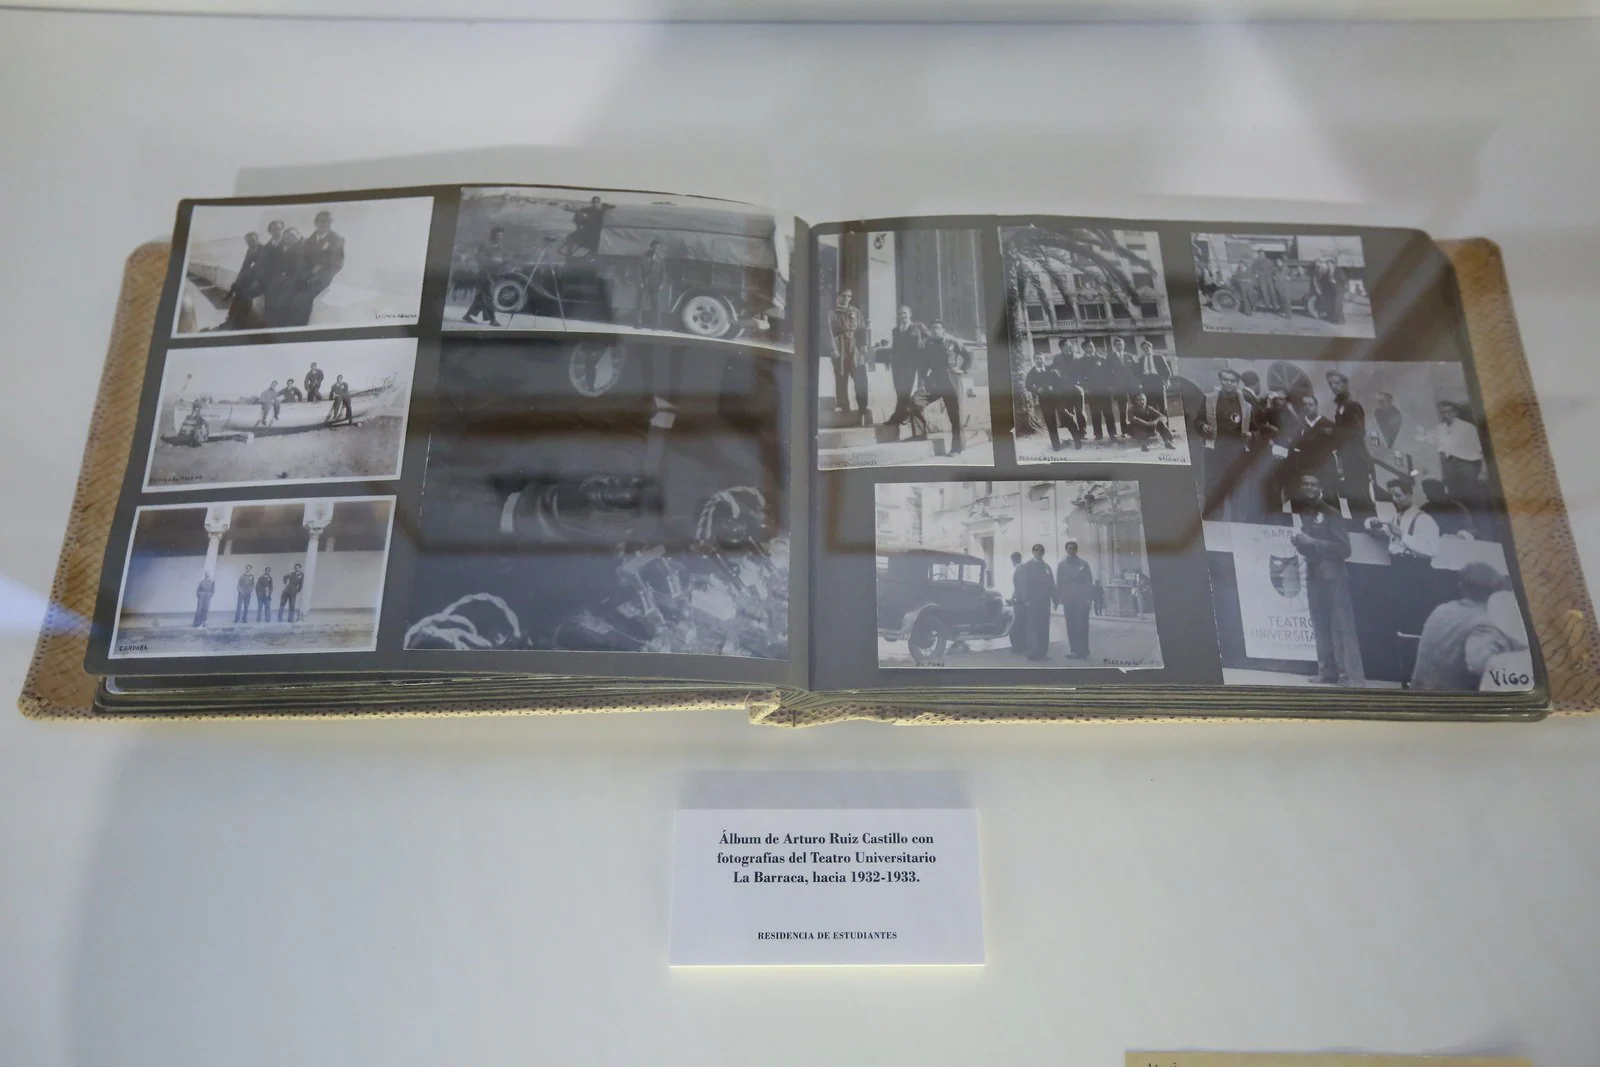 Álbum de Arturo Ruiz Castillo con fotografías del Teatro Universitario de La Barraca, hacia 1932 y 1933. Residencia de Estudiantes.